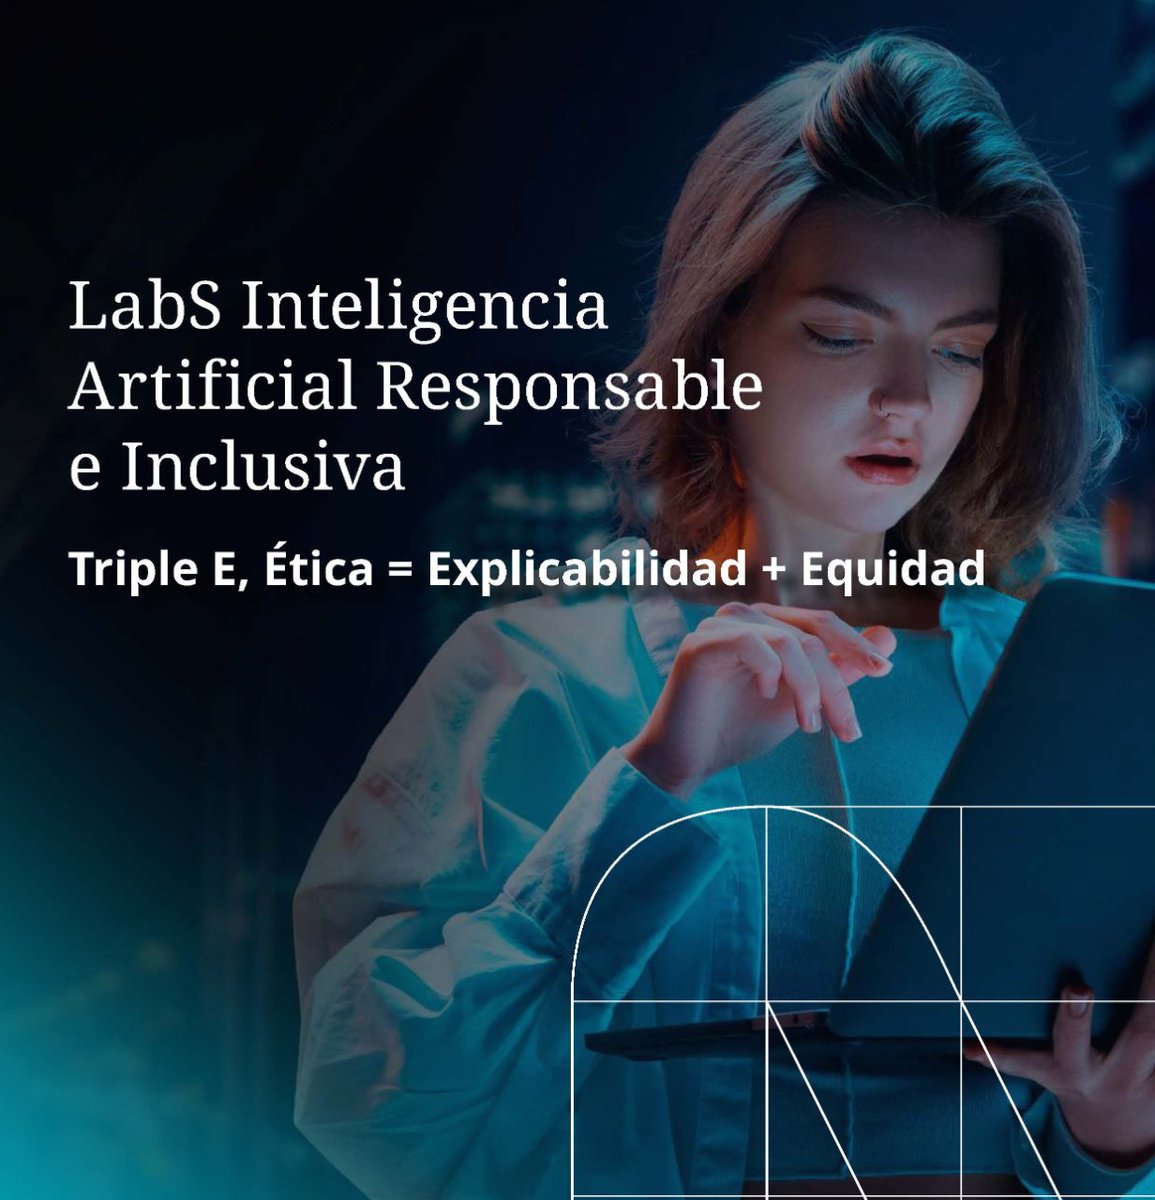 👉@Fundacion_SERES presenta ‘LabS Inteligencia artificial responsable e inclusiva. Triple E: Ética = Explicabilidad + Equidad’, un informe que analiza cómo las empresas pueden aprovechar las oportunidades de la IA. 

#PRISAImpacta

Puedes descargarlo aquí: fundacionseres.org/Paginas/Campus…